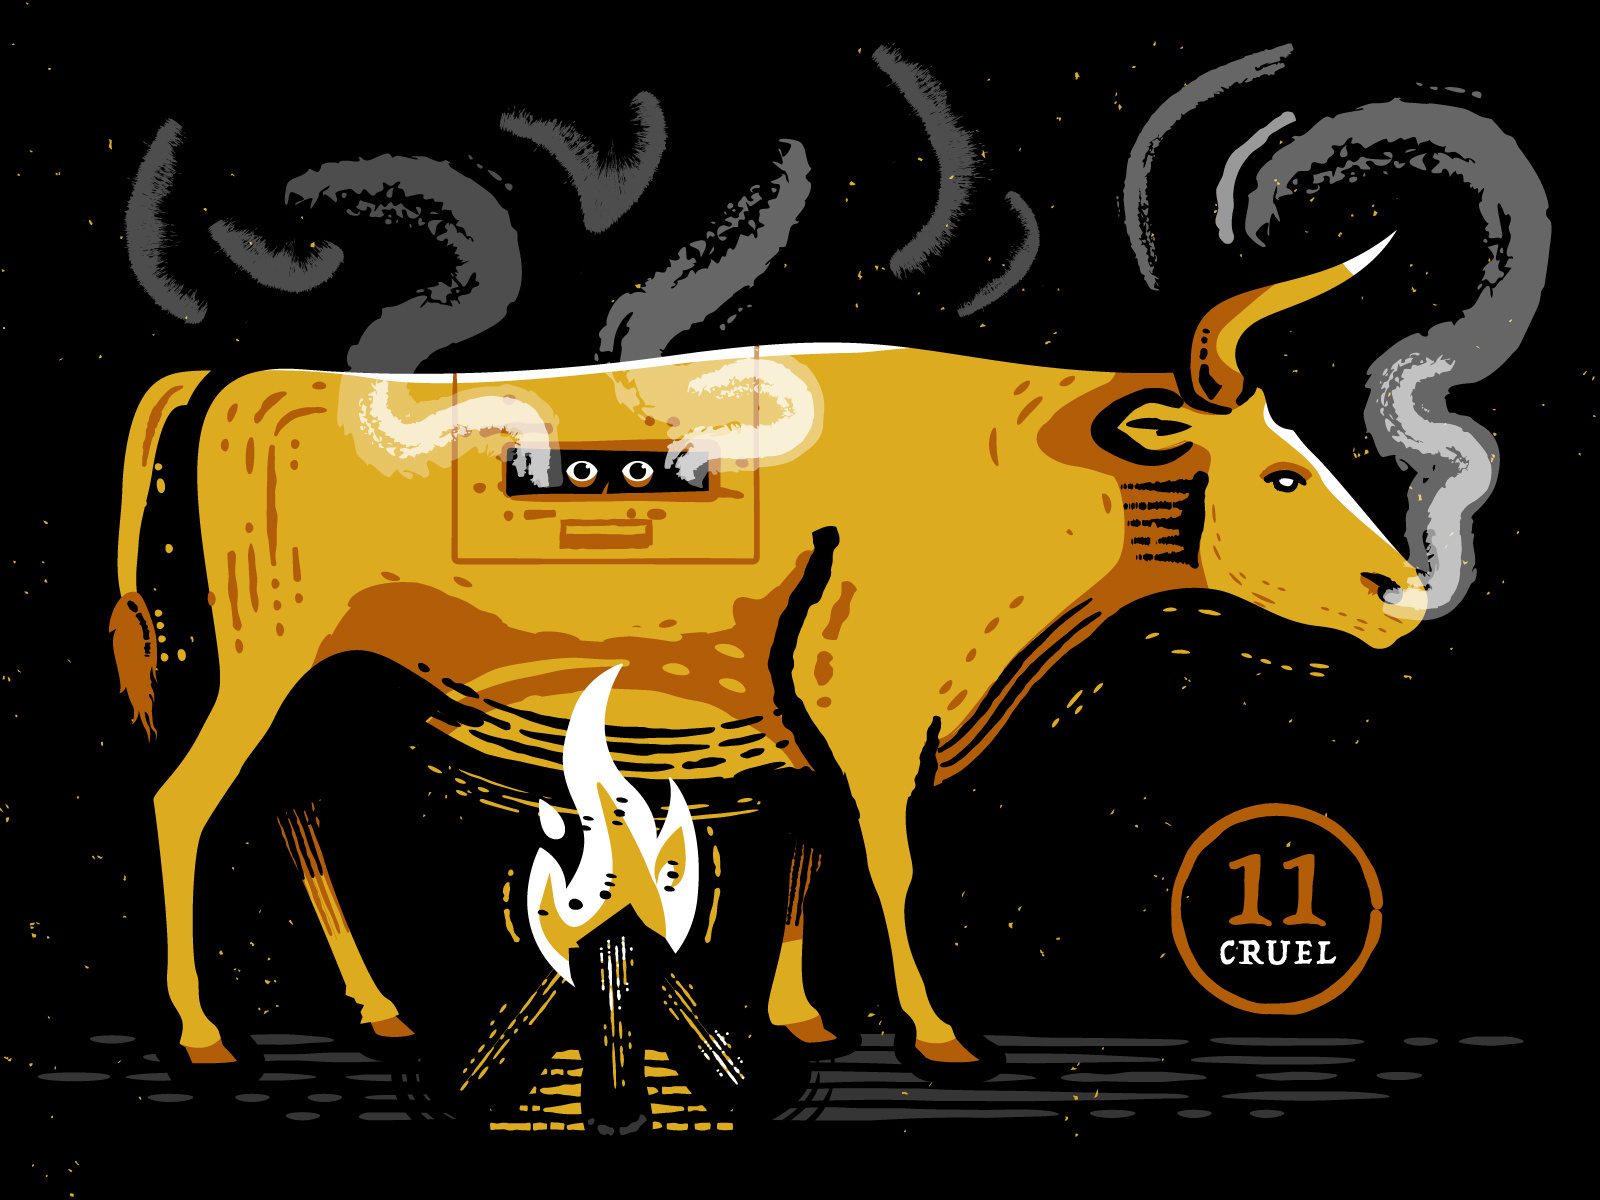 Inktober illustration of the Brazen Bull